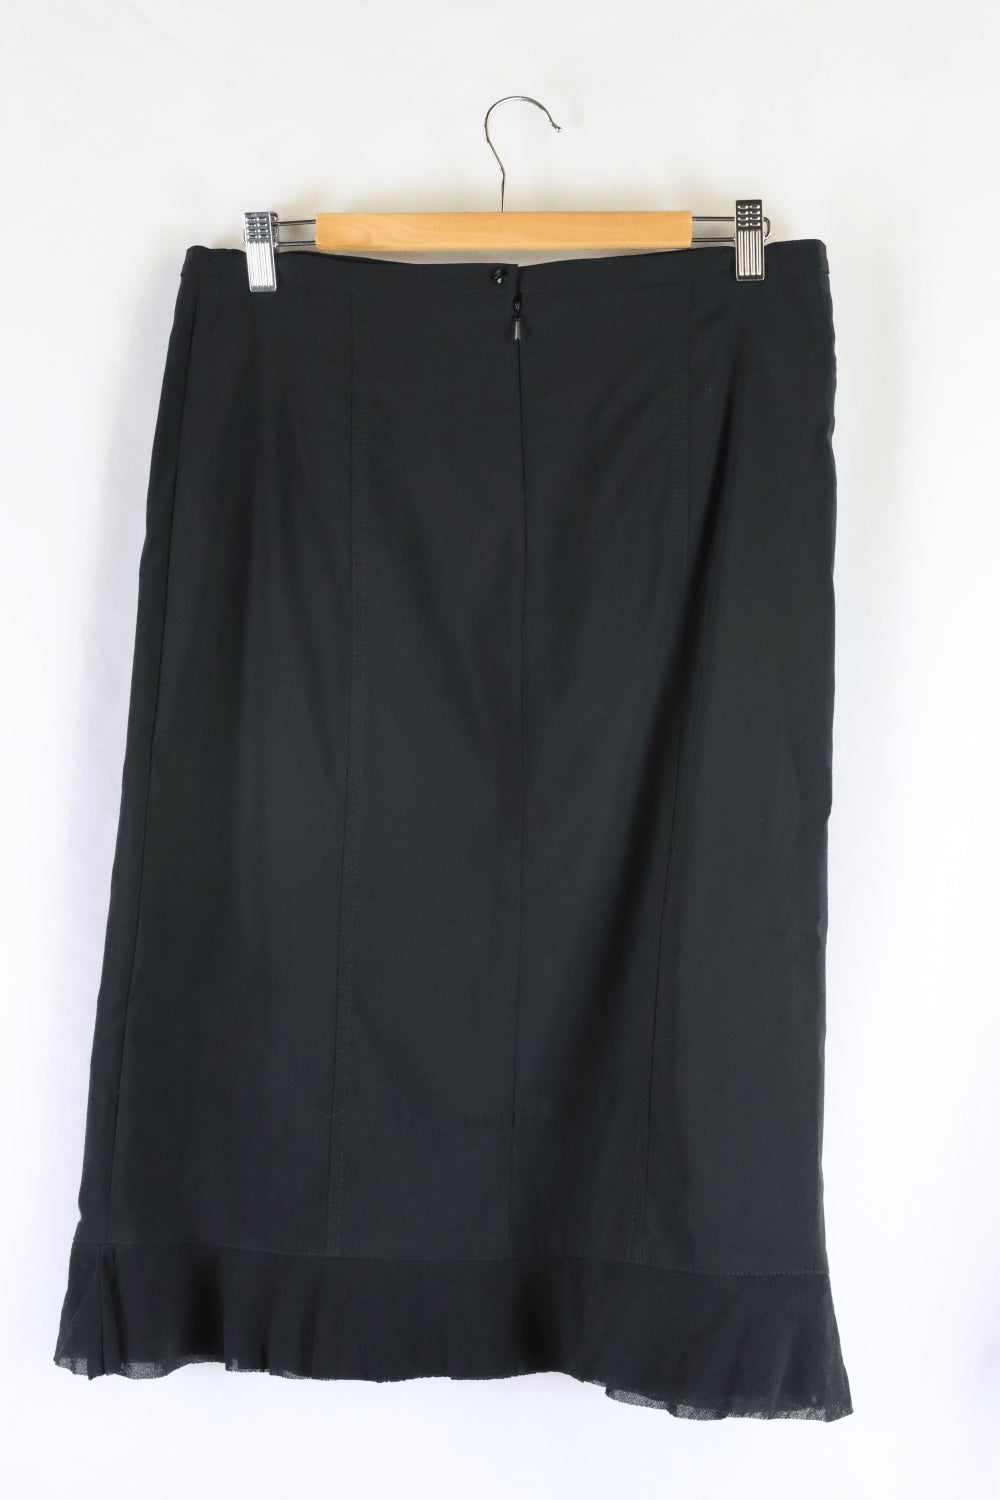 Vertice Black Skirt 14